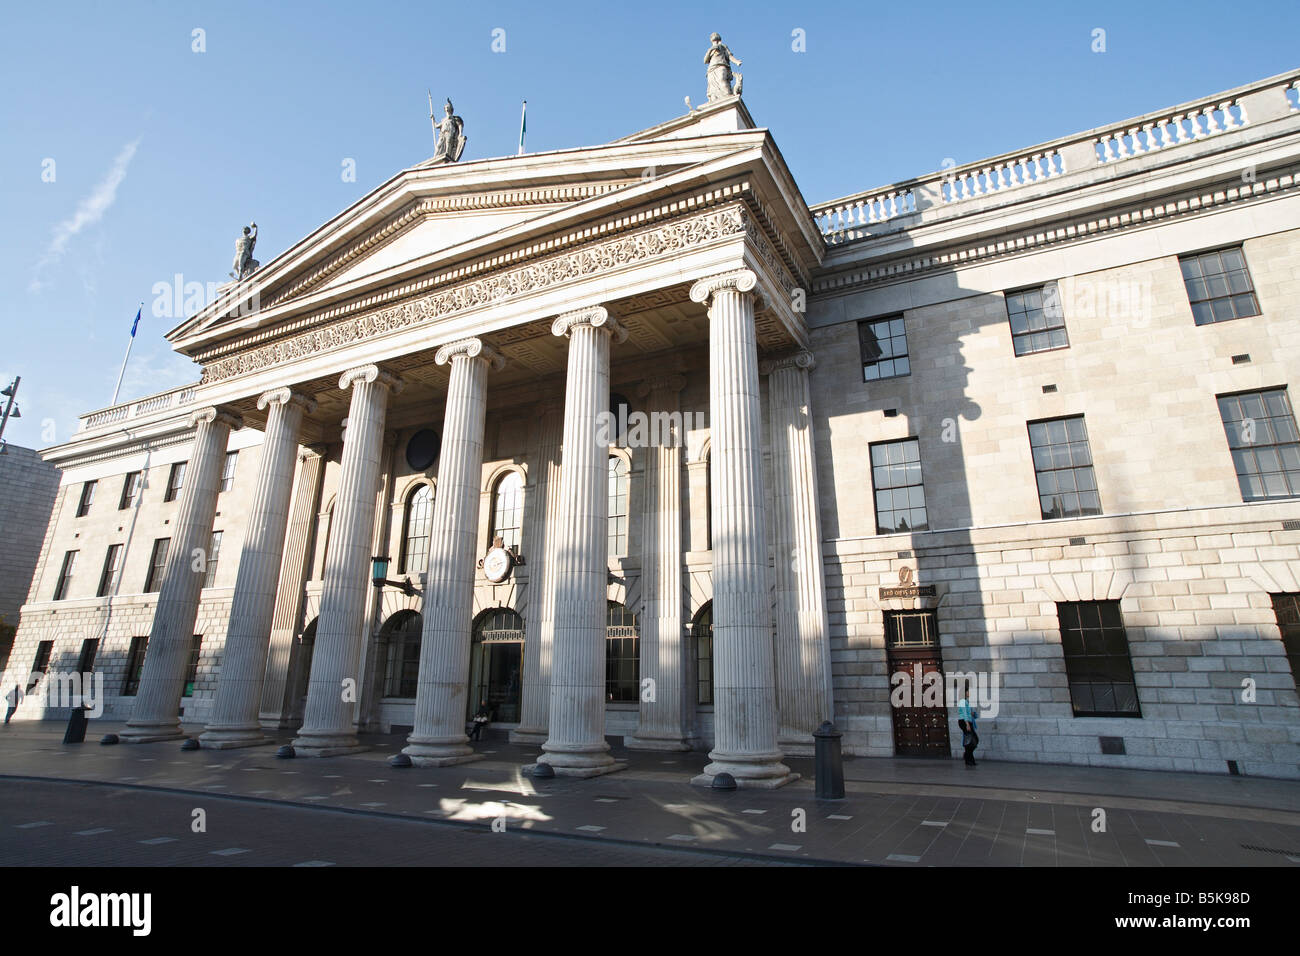 Le General Post Office (GPO) site de l'Insurrection de Pâques 1916 sur O'Connell Street Dublin 1 Irlande Banque D'Images